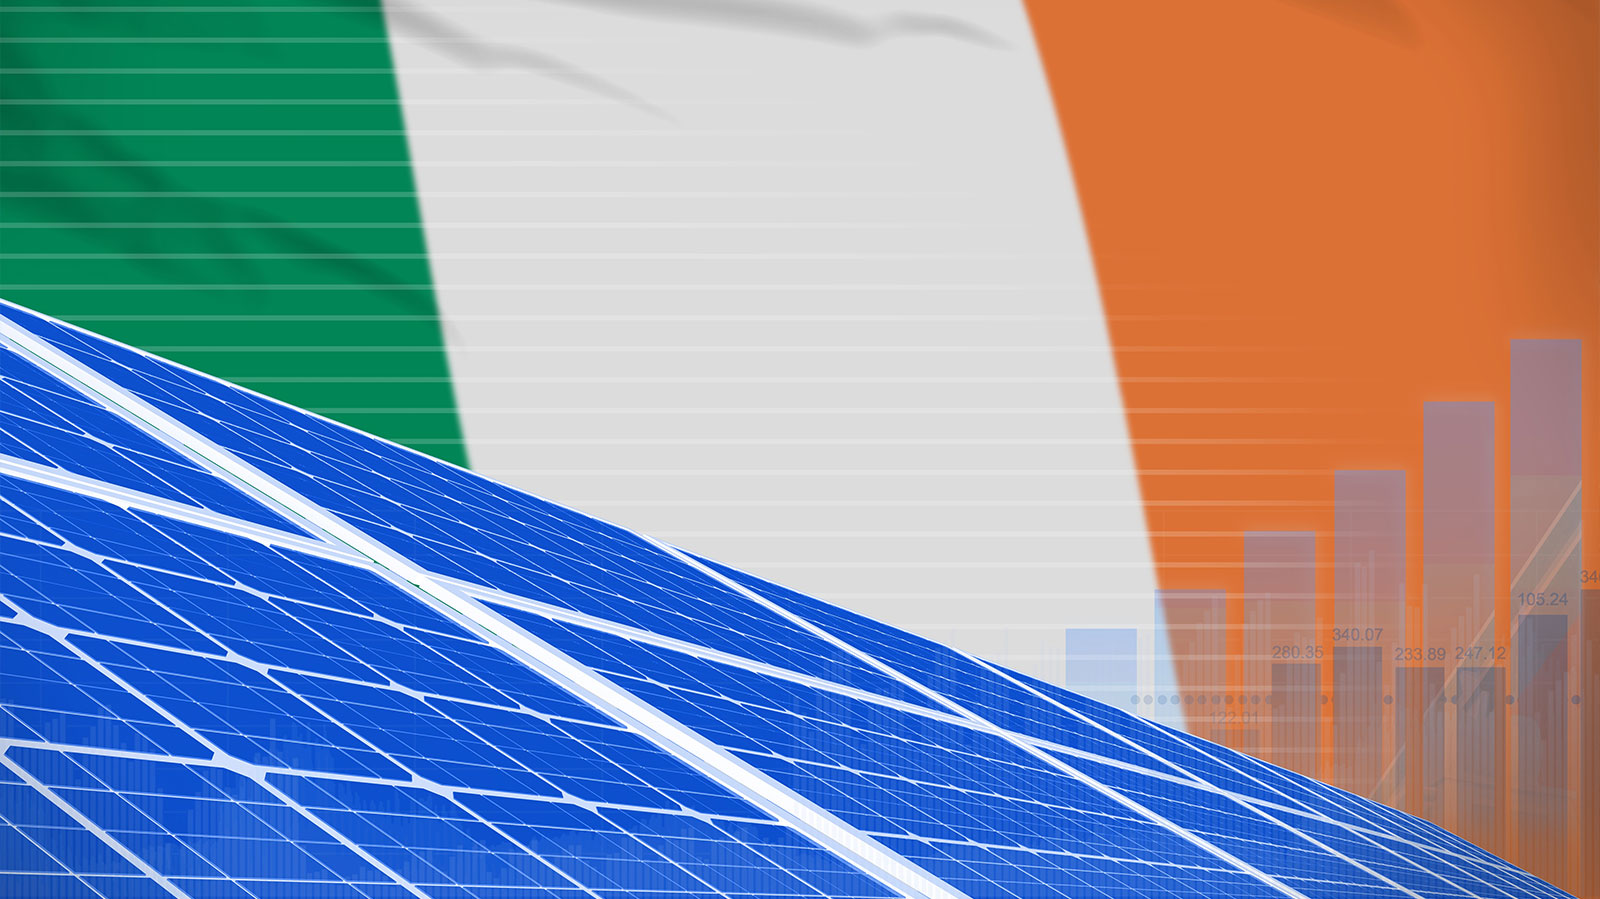 Ireland’s renewable energy sector